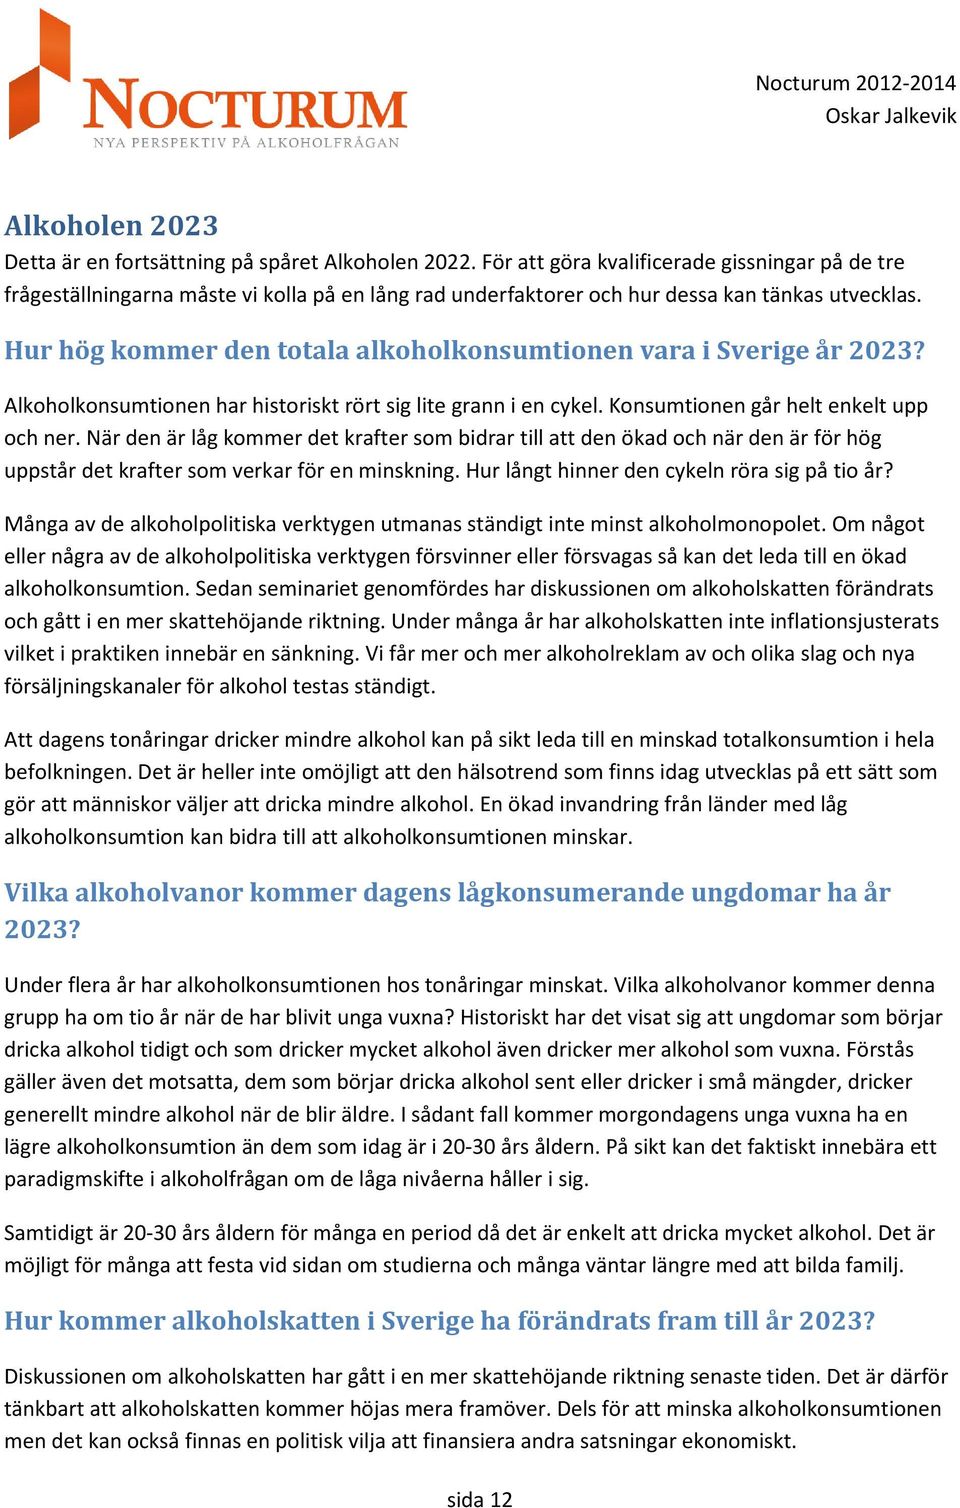 Hur hög kommer den totala alkoholkonsumtionen vara i Sverige år 2023? Alkoholkonsumtionen har historiskt rört sig lite grann i en cykel. Konsumtionen går helt enkelt upp och ner.